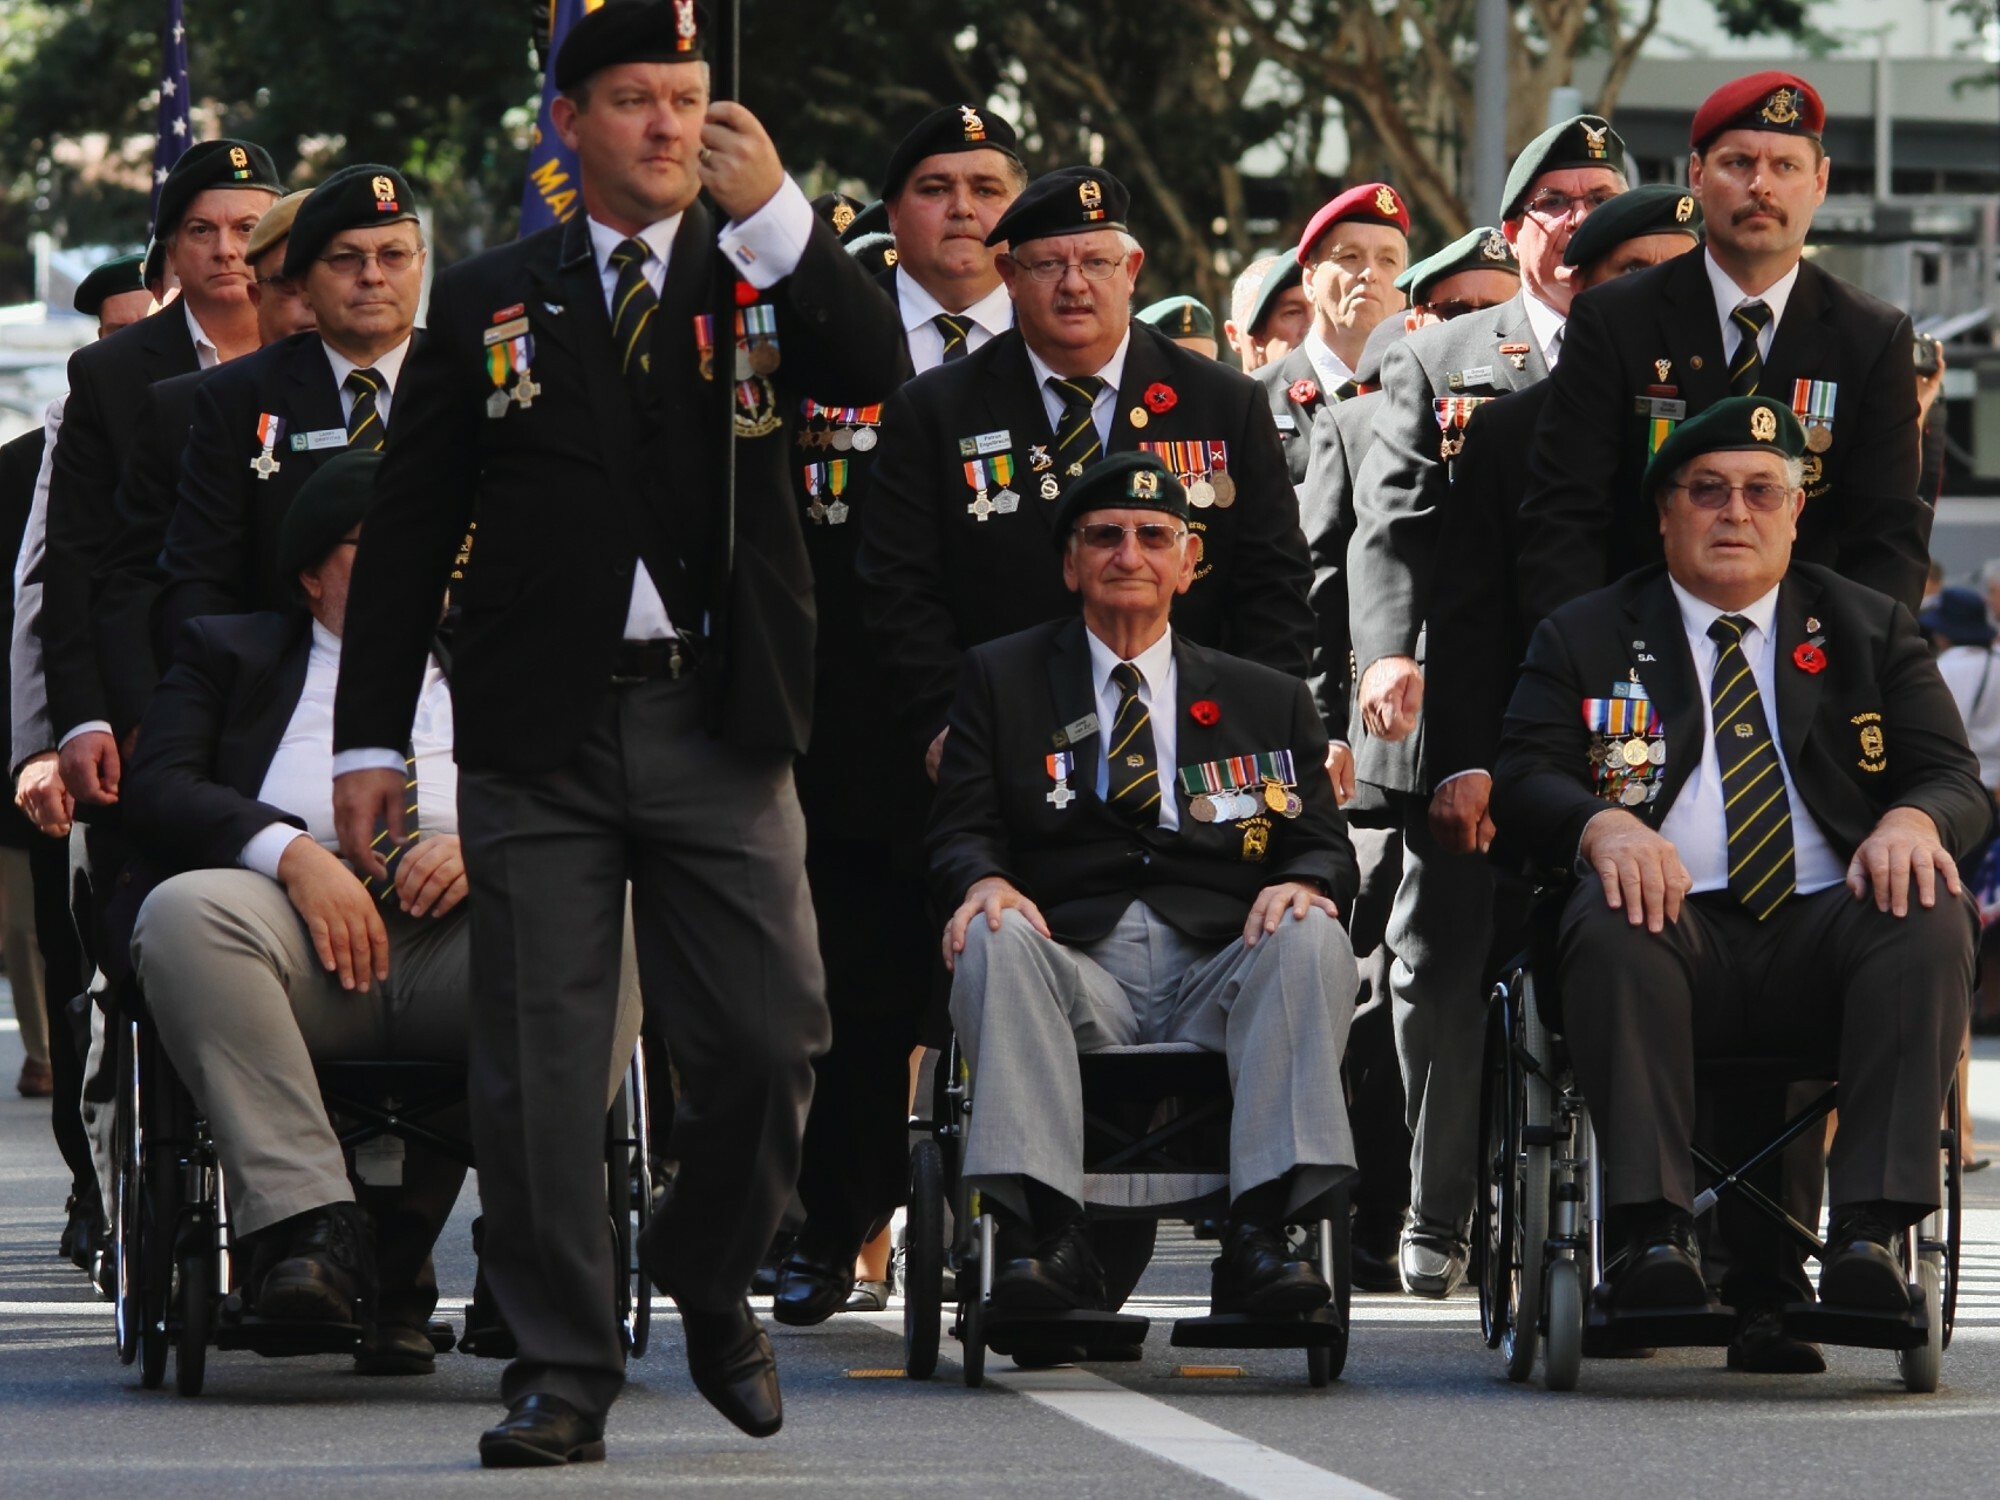 Parade of veterans in uniform.